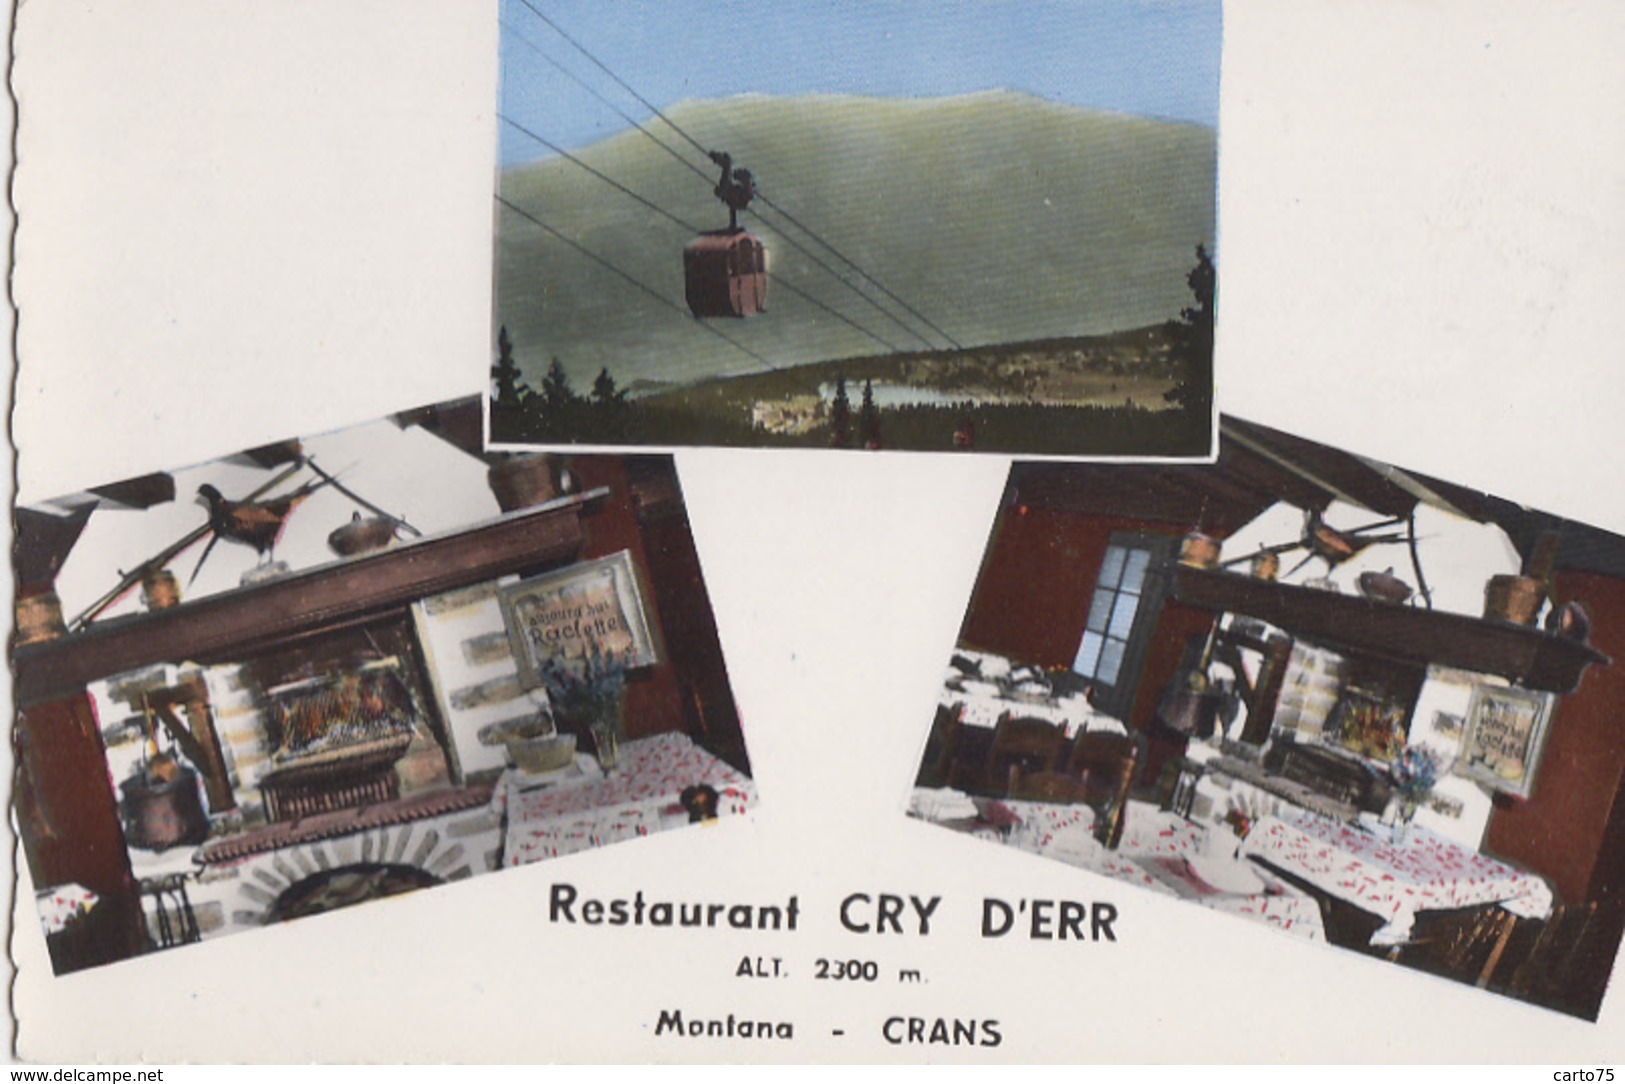 Suisse - Crans-Montana - Restaurant Cry D'Err - Téléphérique - Vue Intérieure Restaurant - Crans-Montana